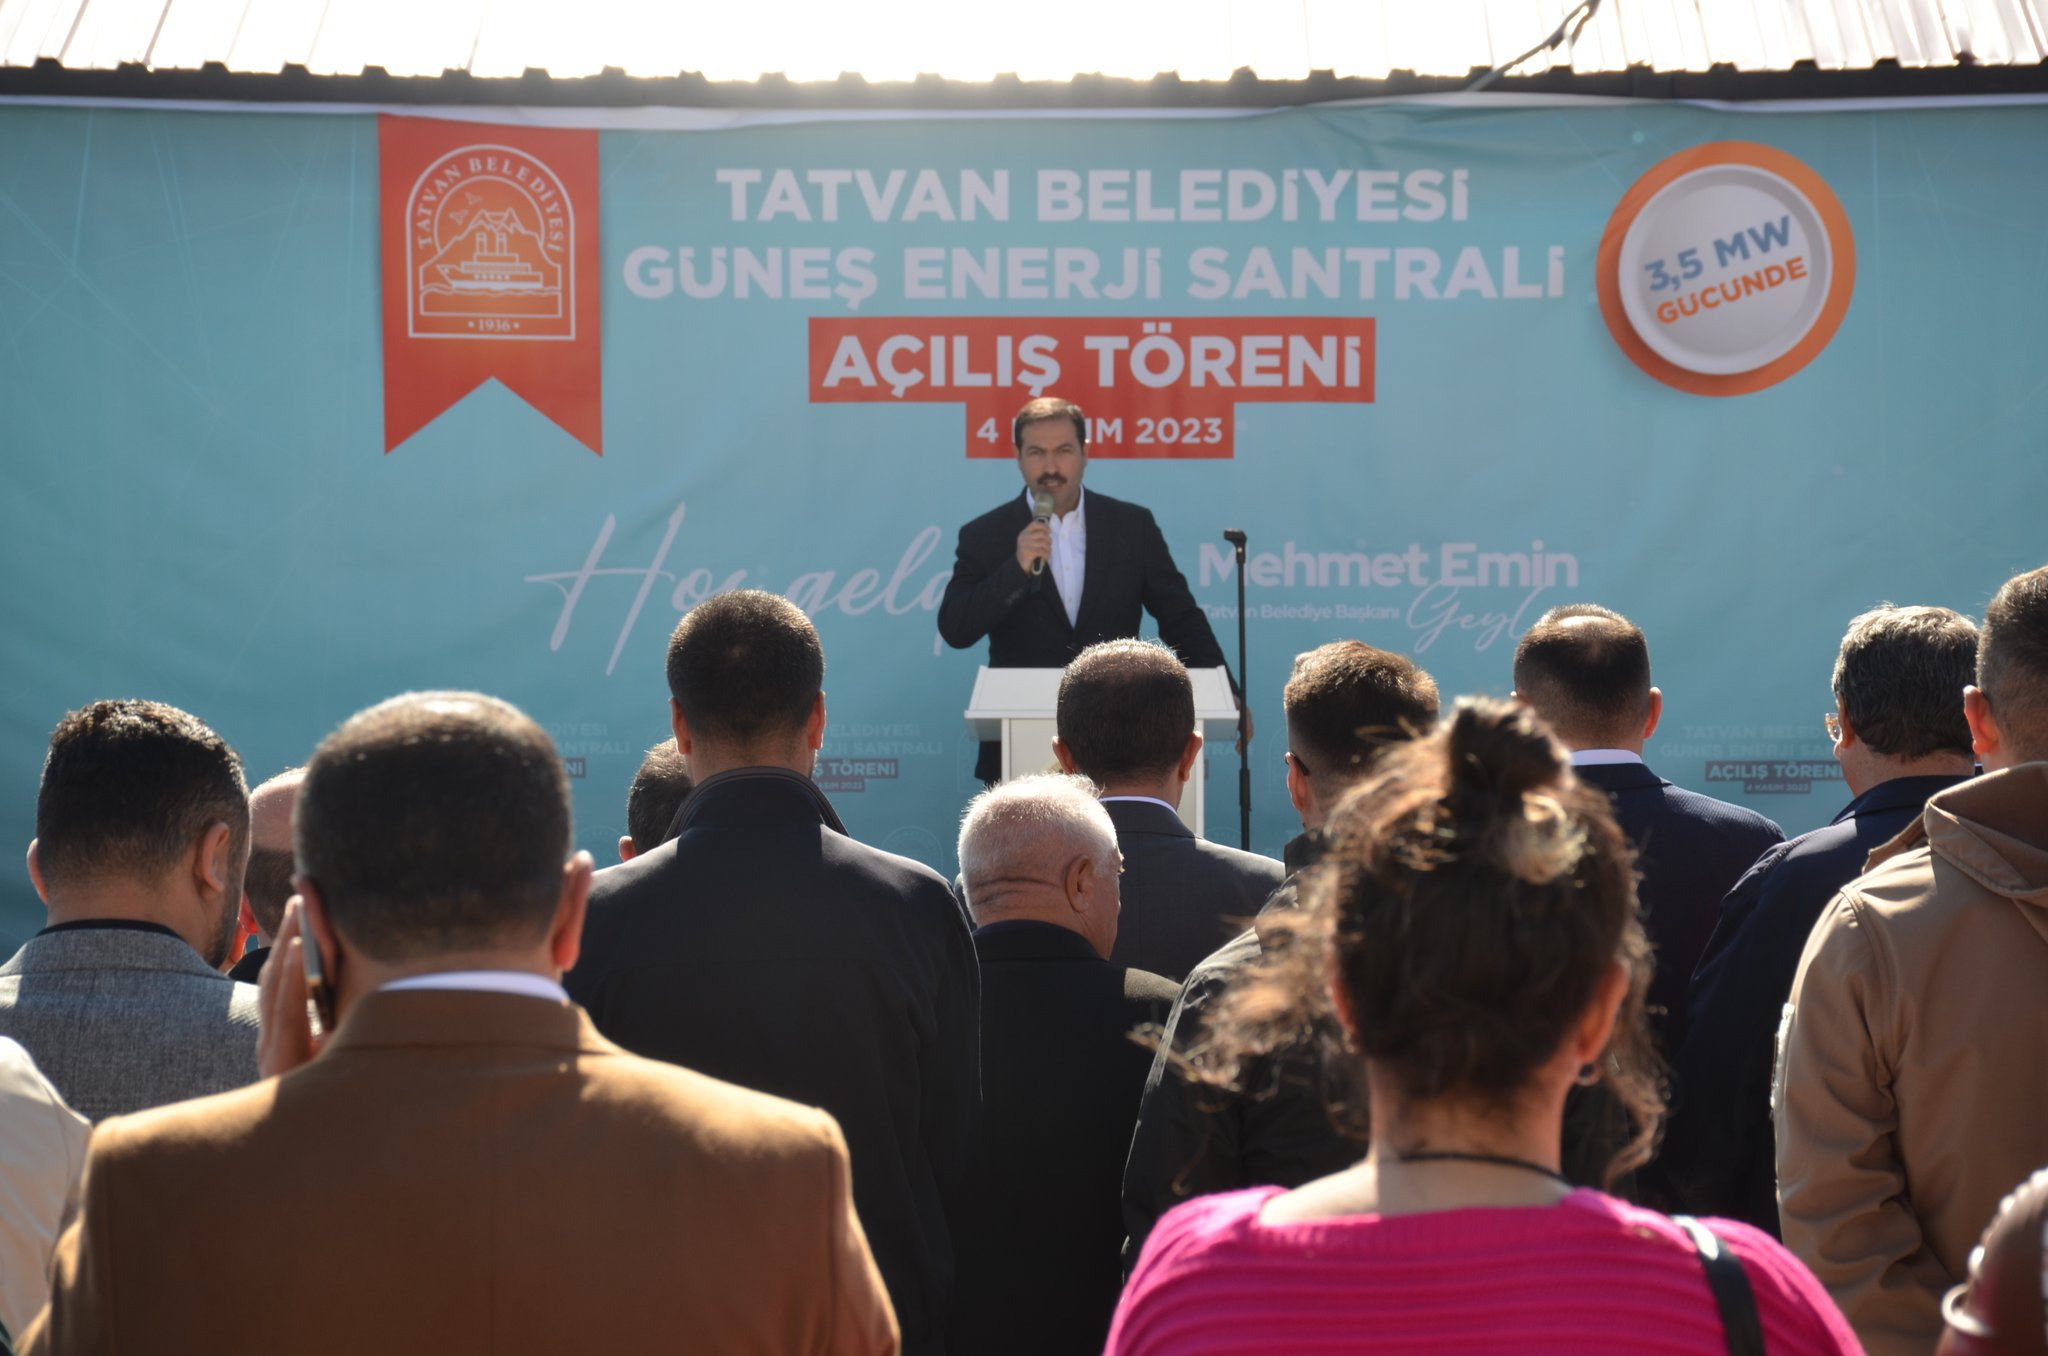 Tatvan'a 3.5 MW Güneş Enerji Santrali Açıldı